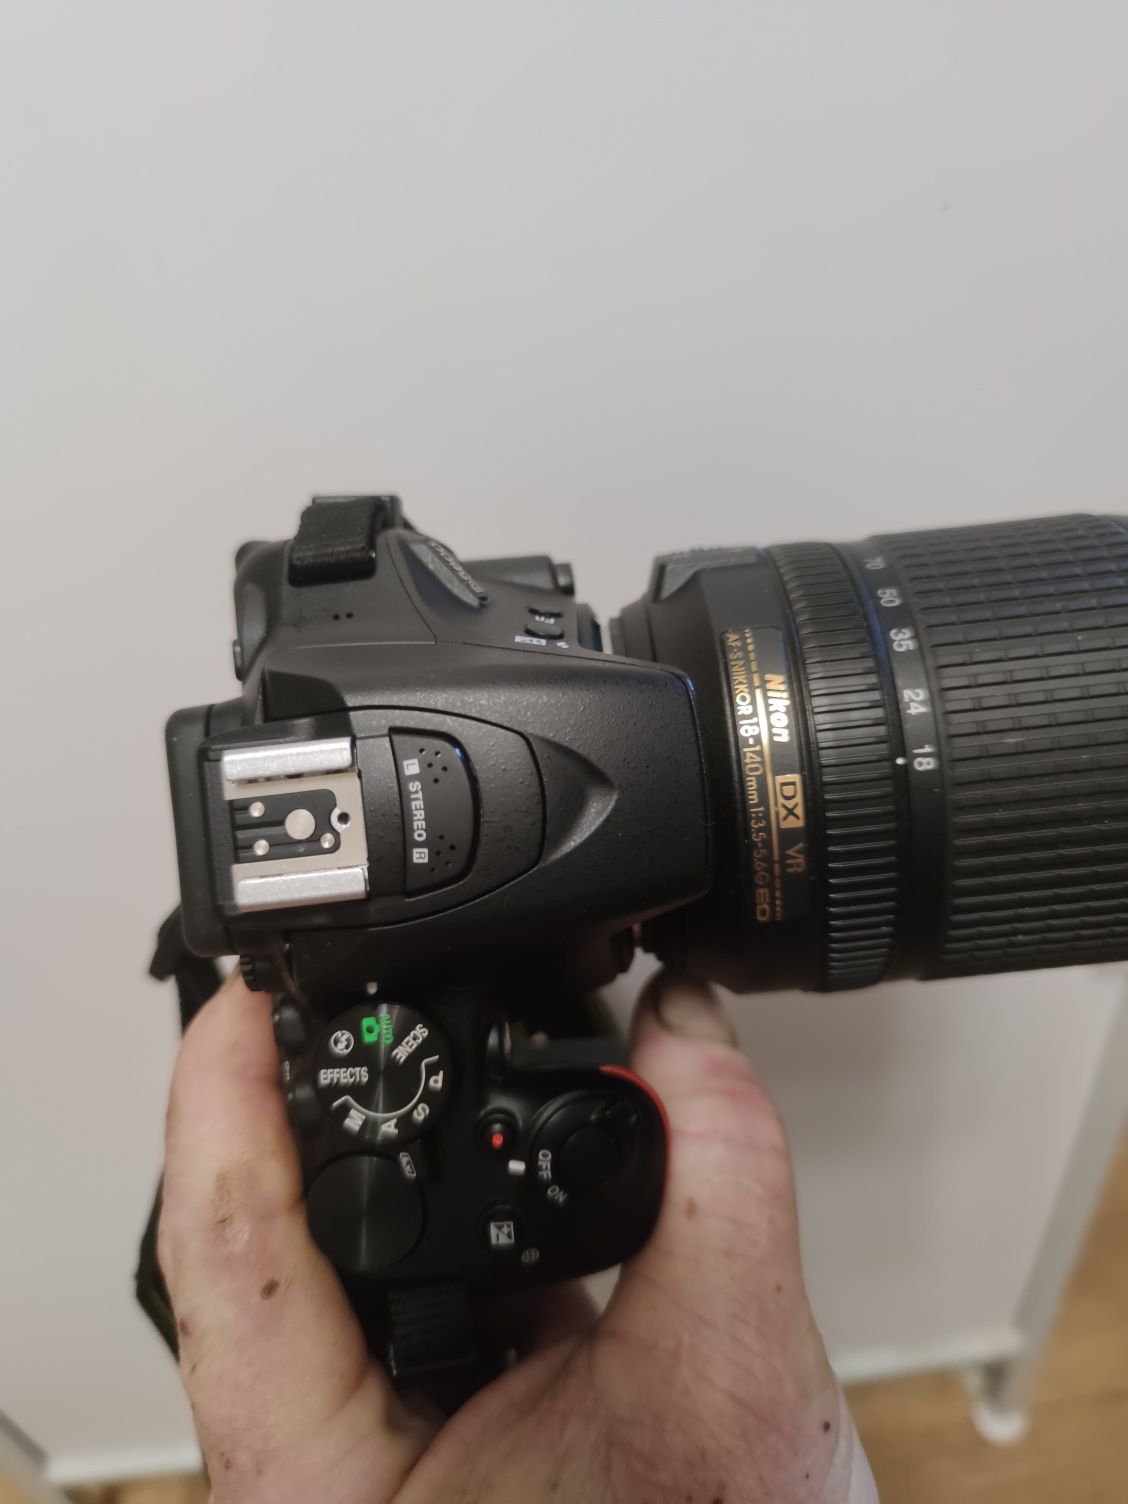 Nikon D5600 AF-S DX NIKKOR 18-140 mm f/3.5-5.6 G ED VR